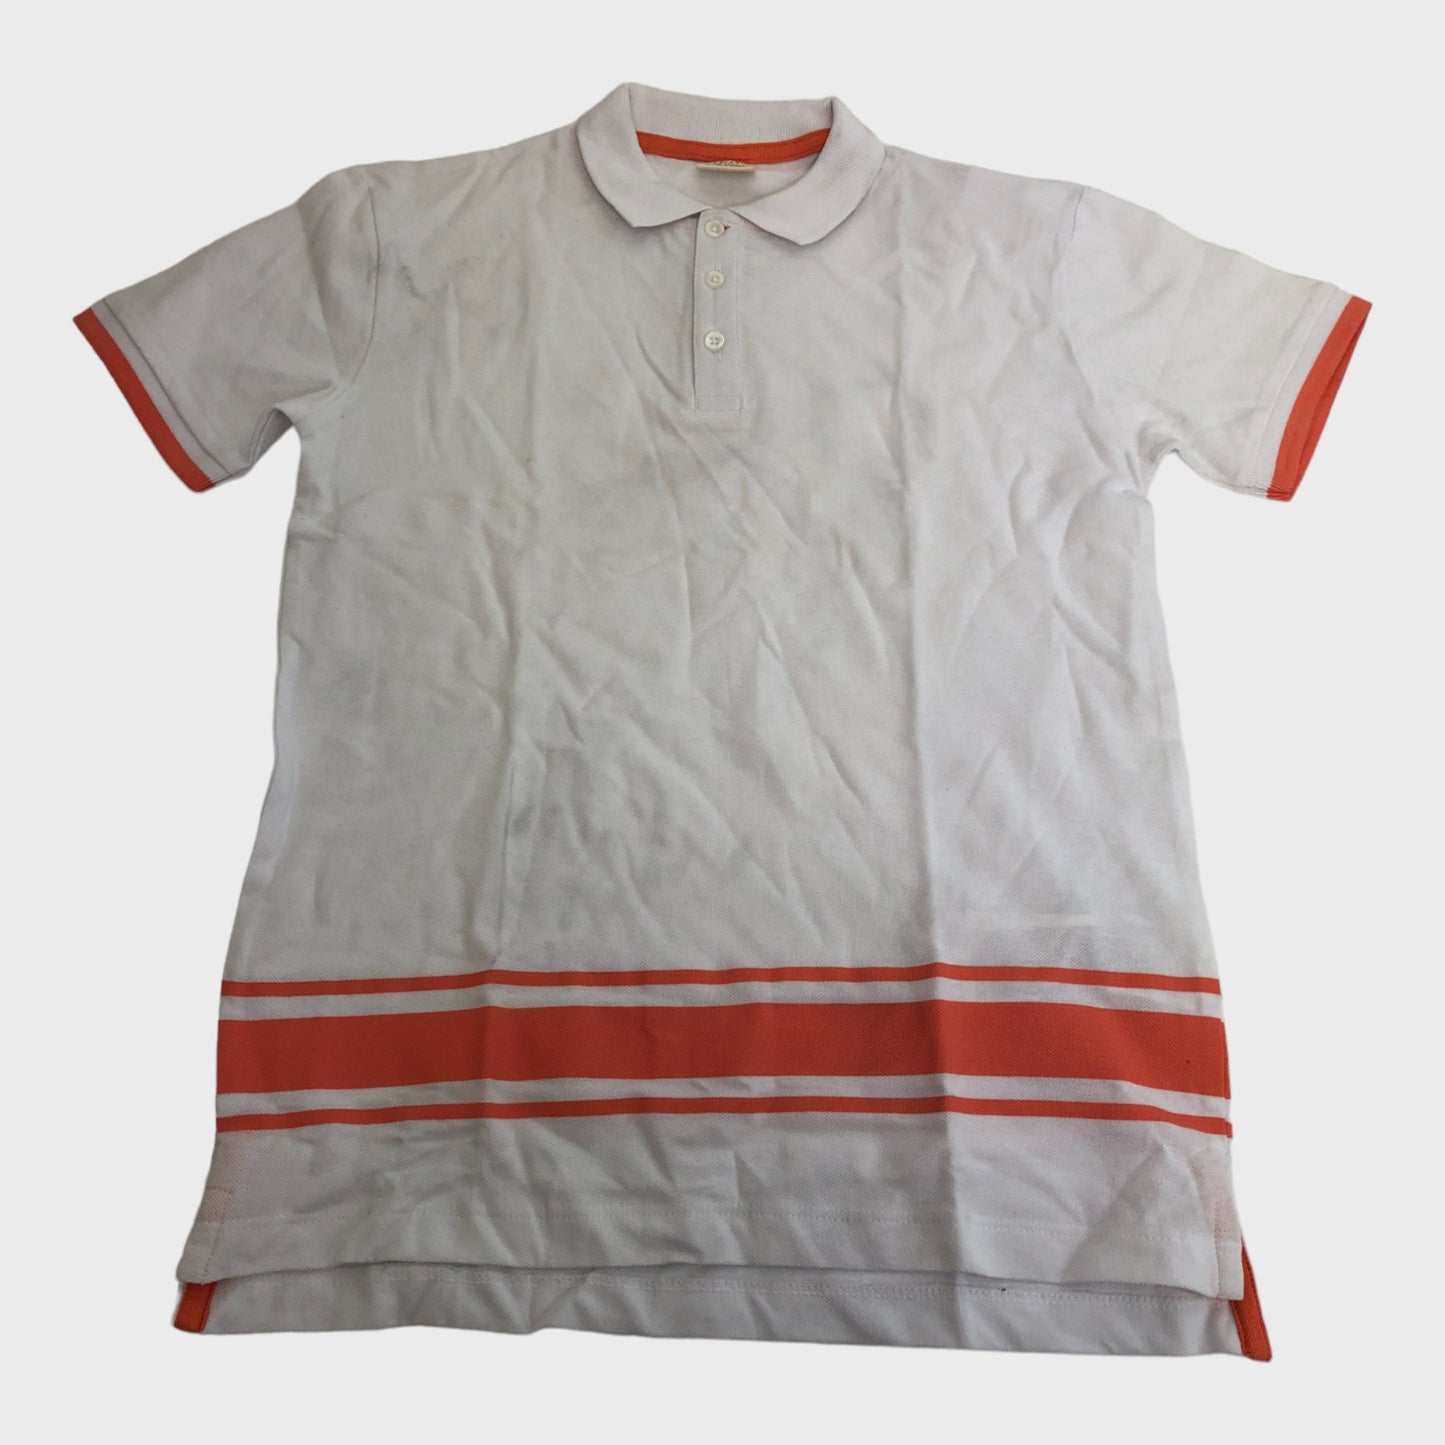 Kid's White & Orange Polo Shirt